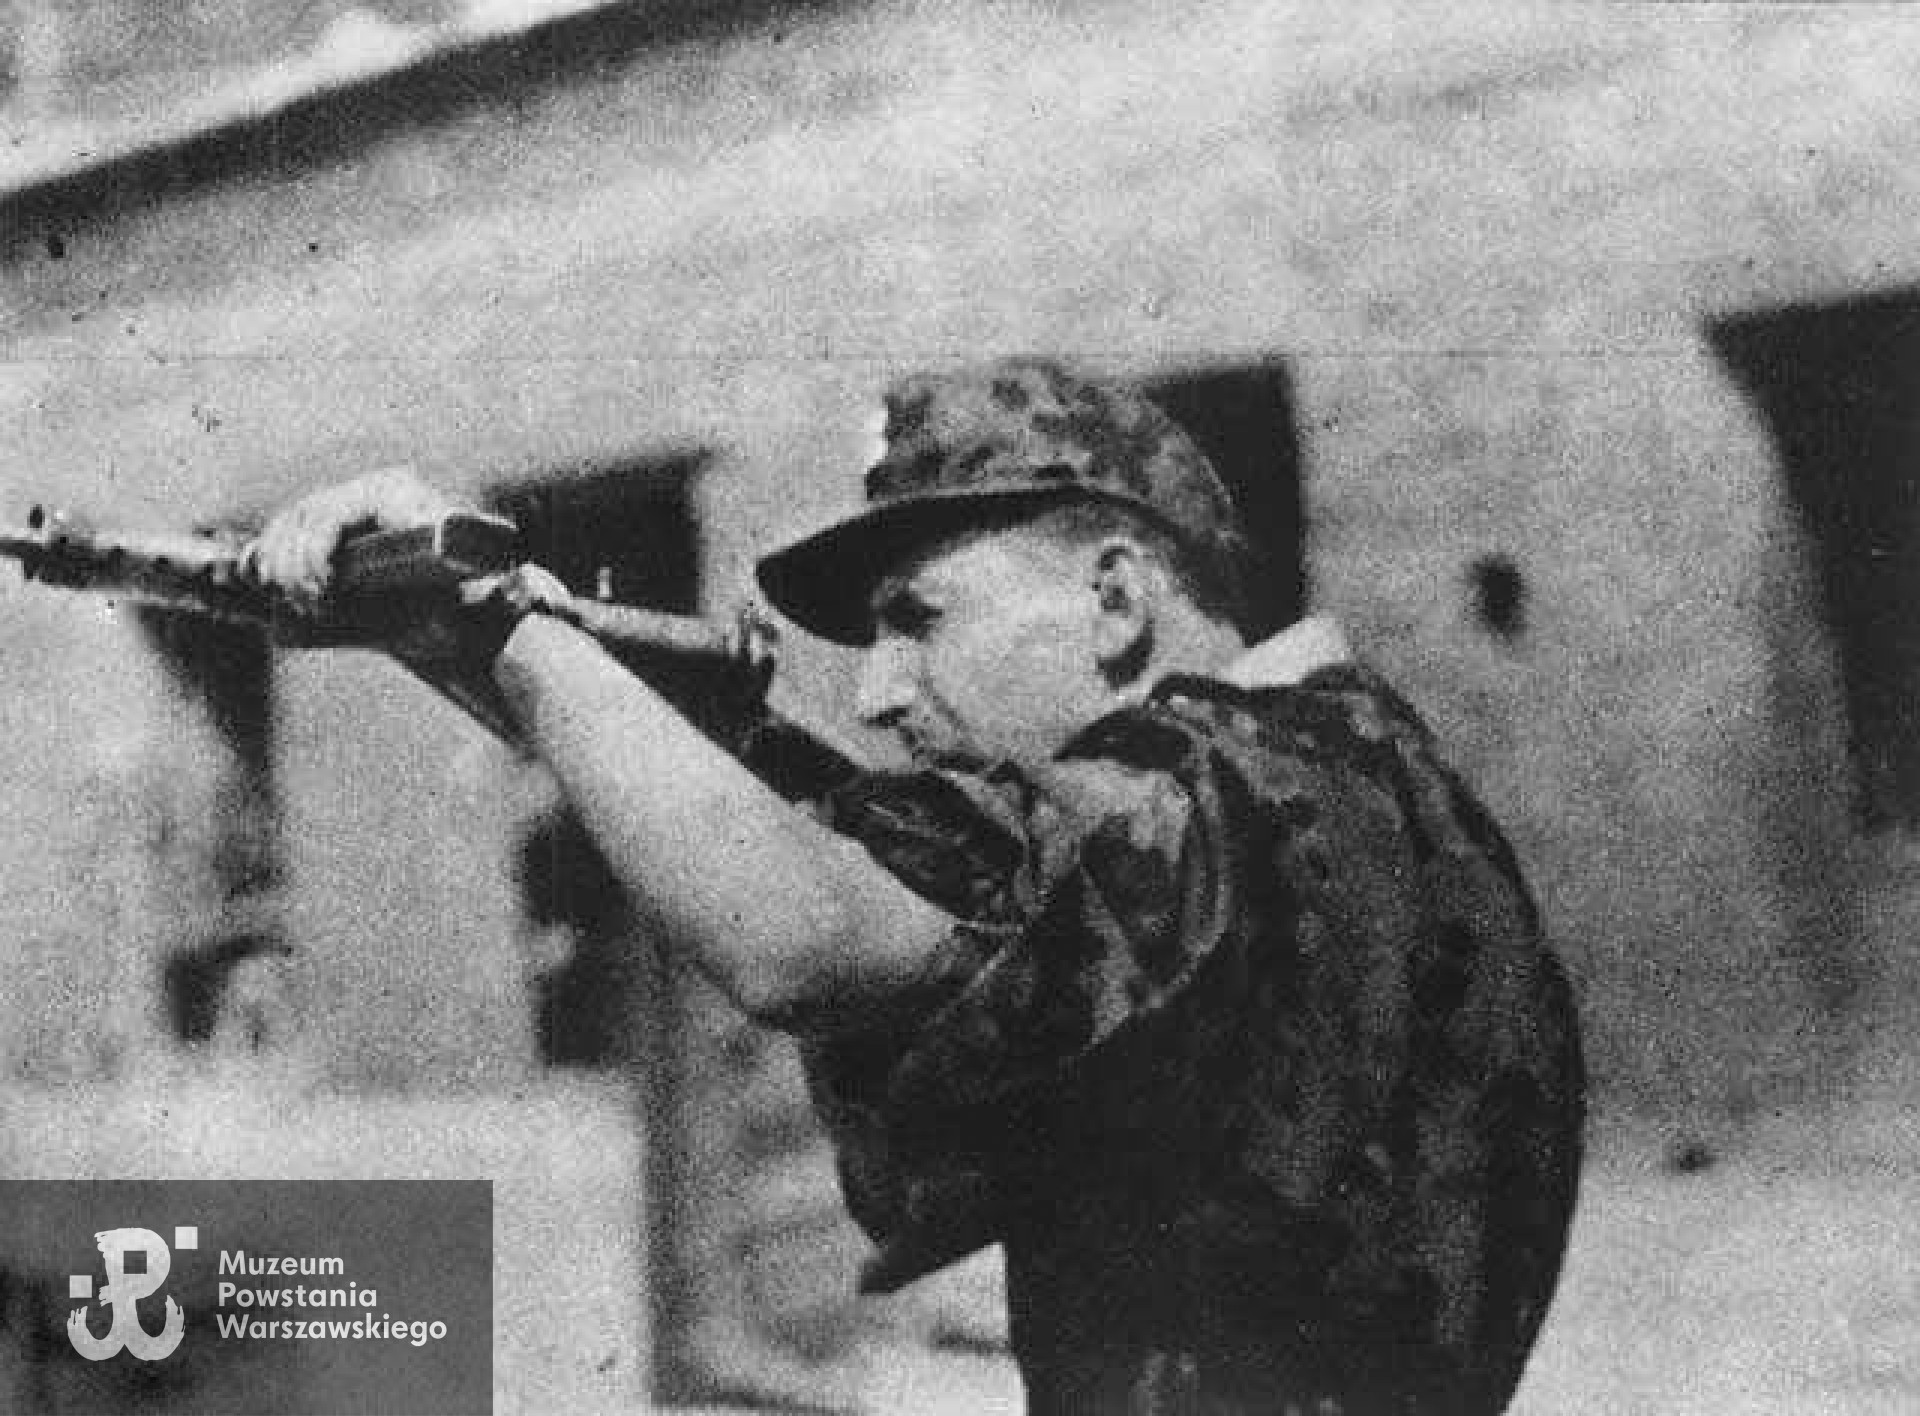 Powstanie Warszawskie, sierż. pchor "Siódemka" z pistoletem maszynowym Sten